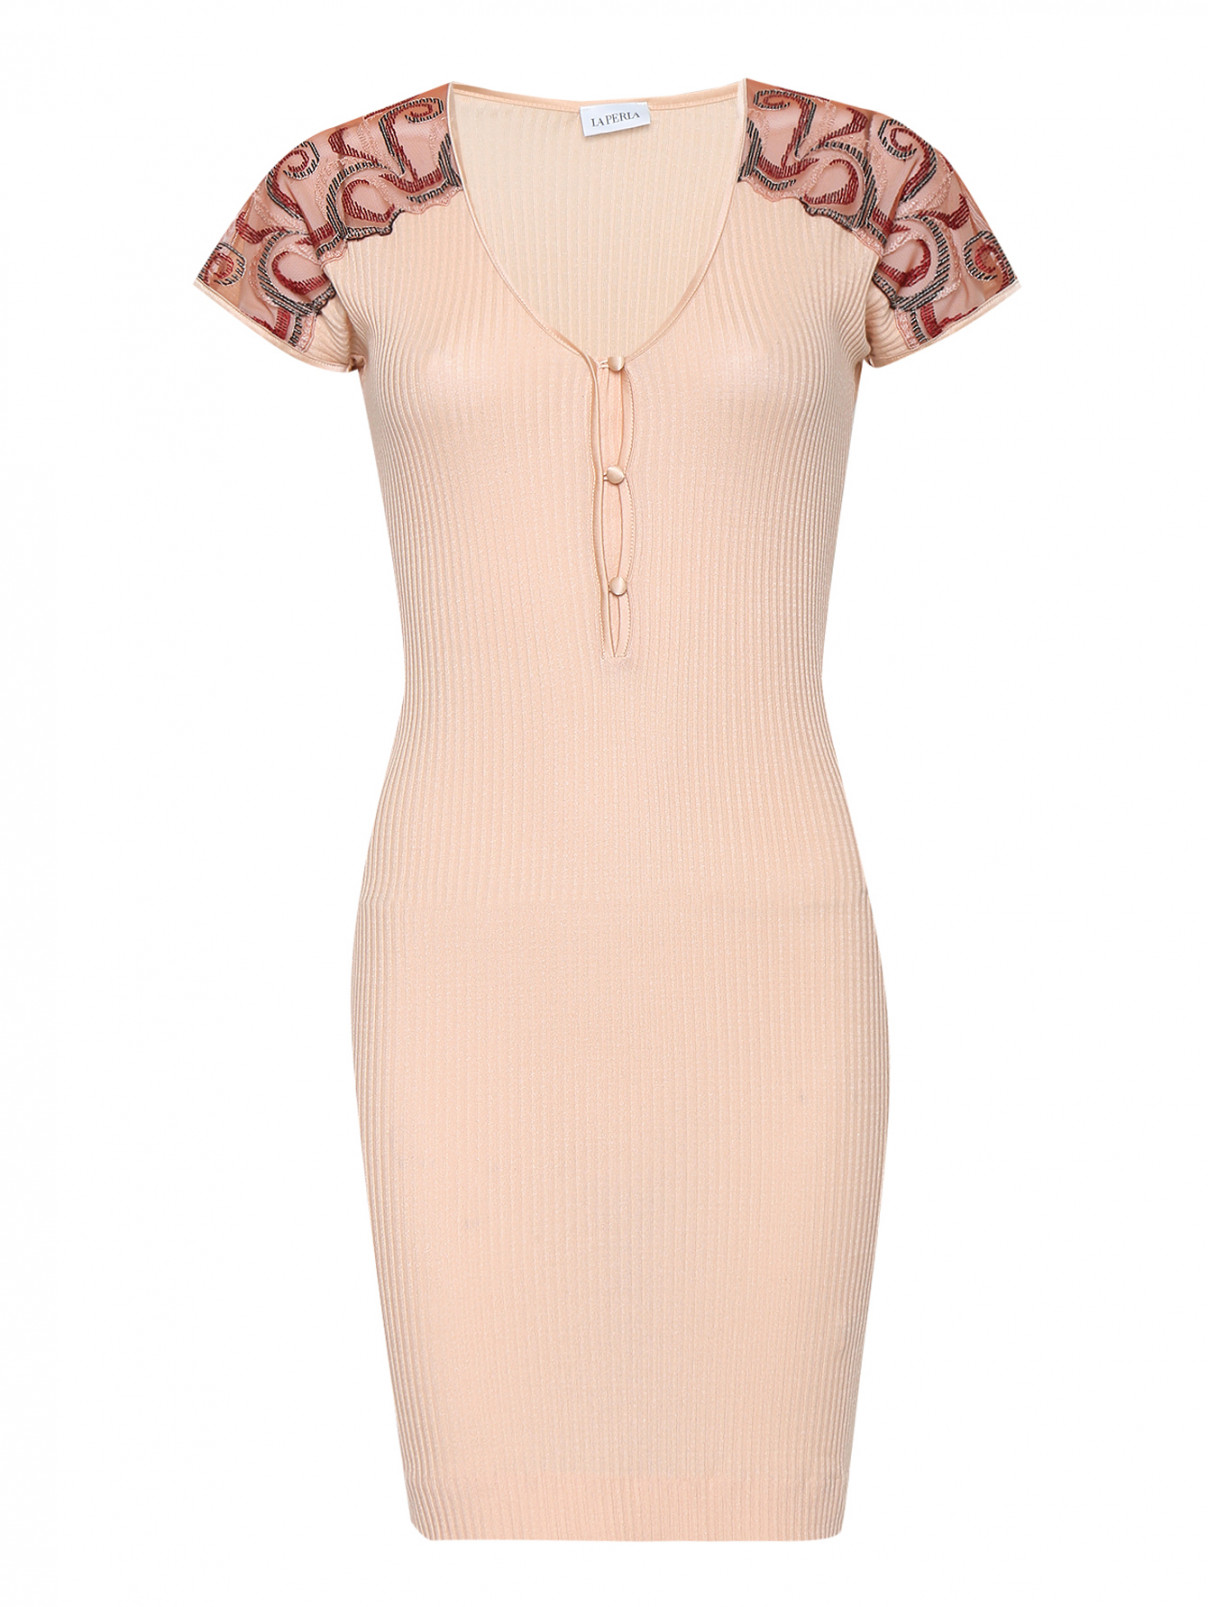 Сорочка из шелка и хлопка с кружевной отделкой La Perla  –  Общий вид  – Цвет:  Розовый